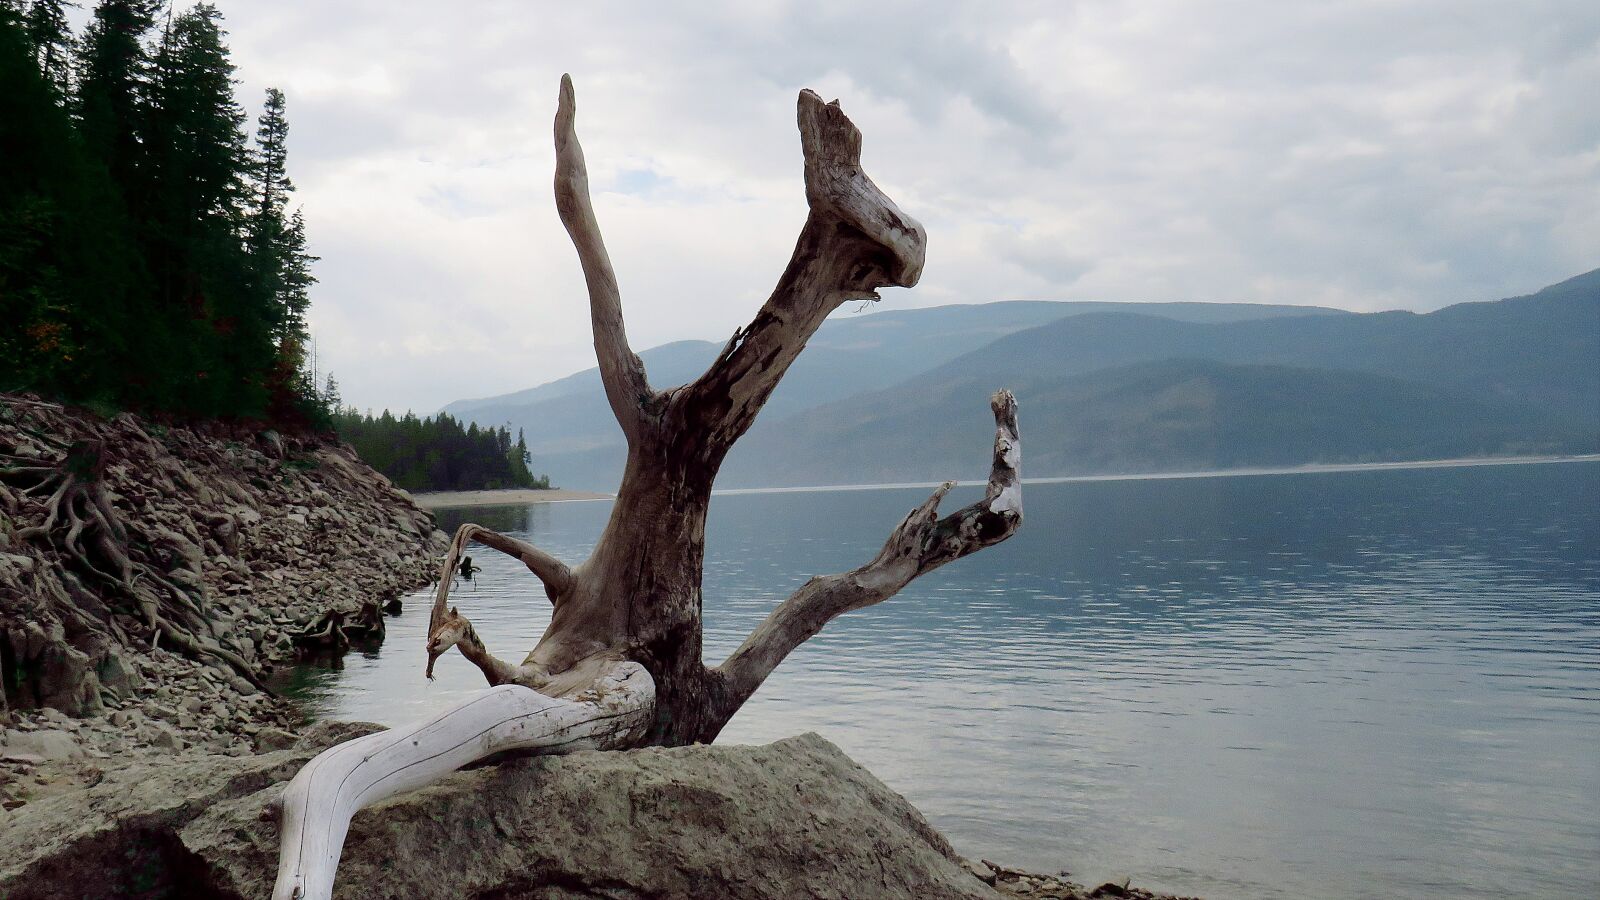 Canon PowerShot SX540 HS + 4.3 - 215.0 mm sample photo. Nature, landscape, sculpture photography